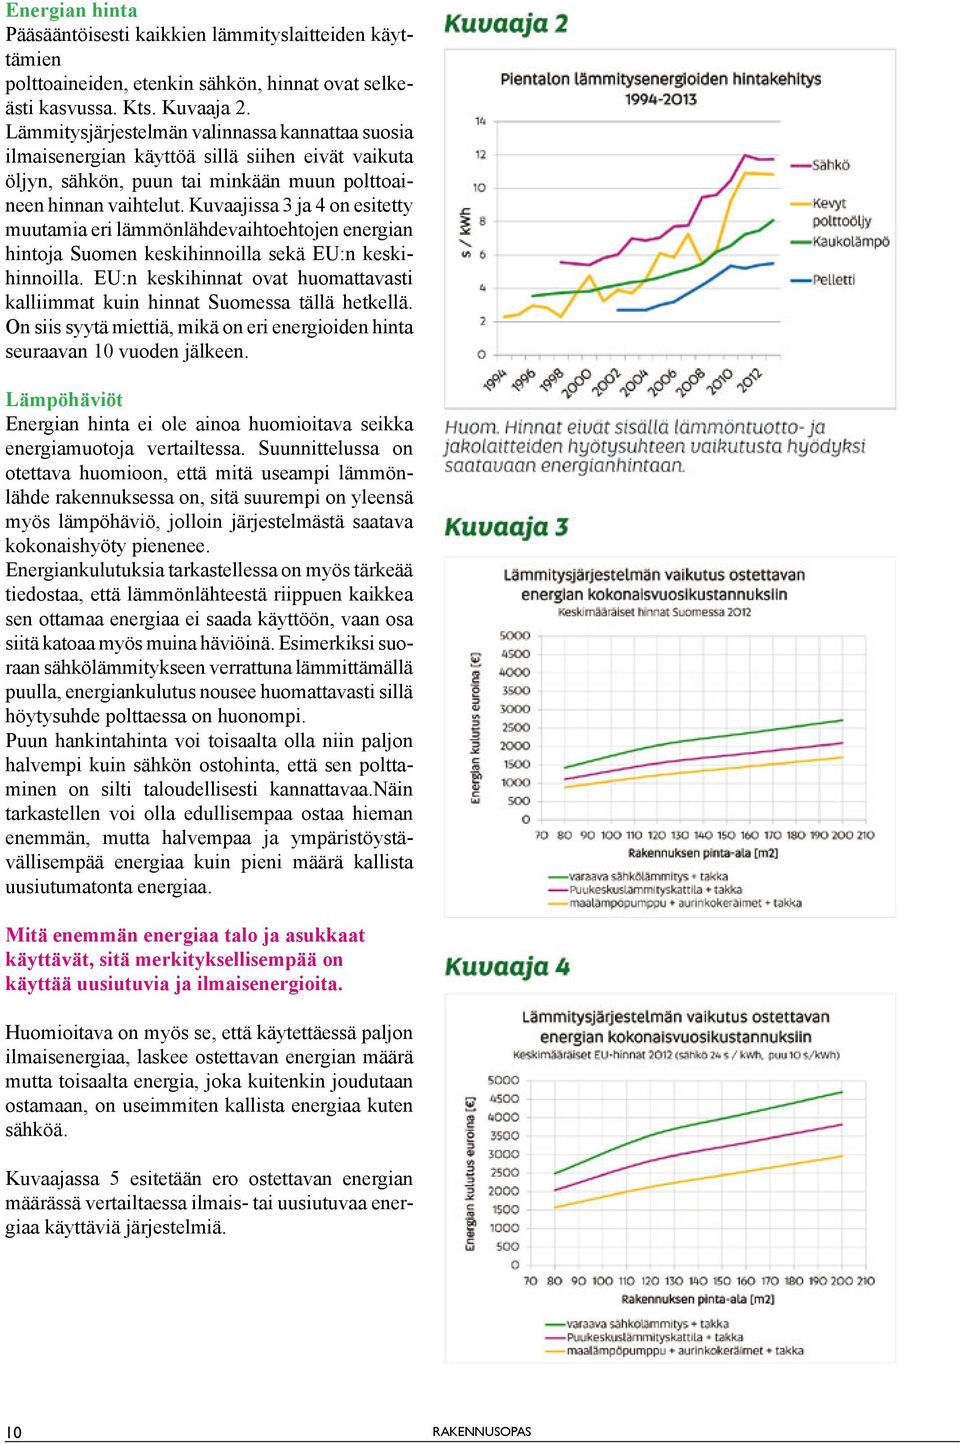 Kuvaajissa 3 ja 4 on esitetty muutamia eri lämmönlähdevaihtoehtojen energian hintoja Suomen keskihinnoilla sekä EU:n keskihinnoilla.